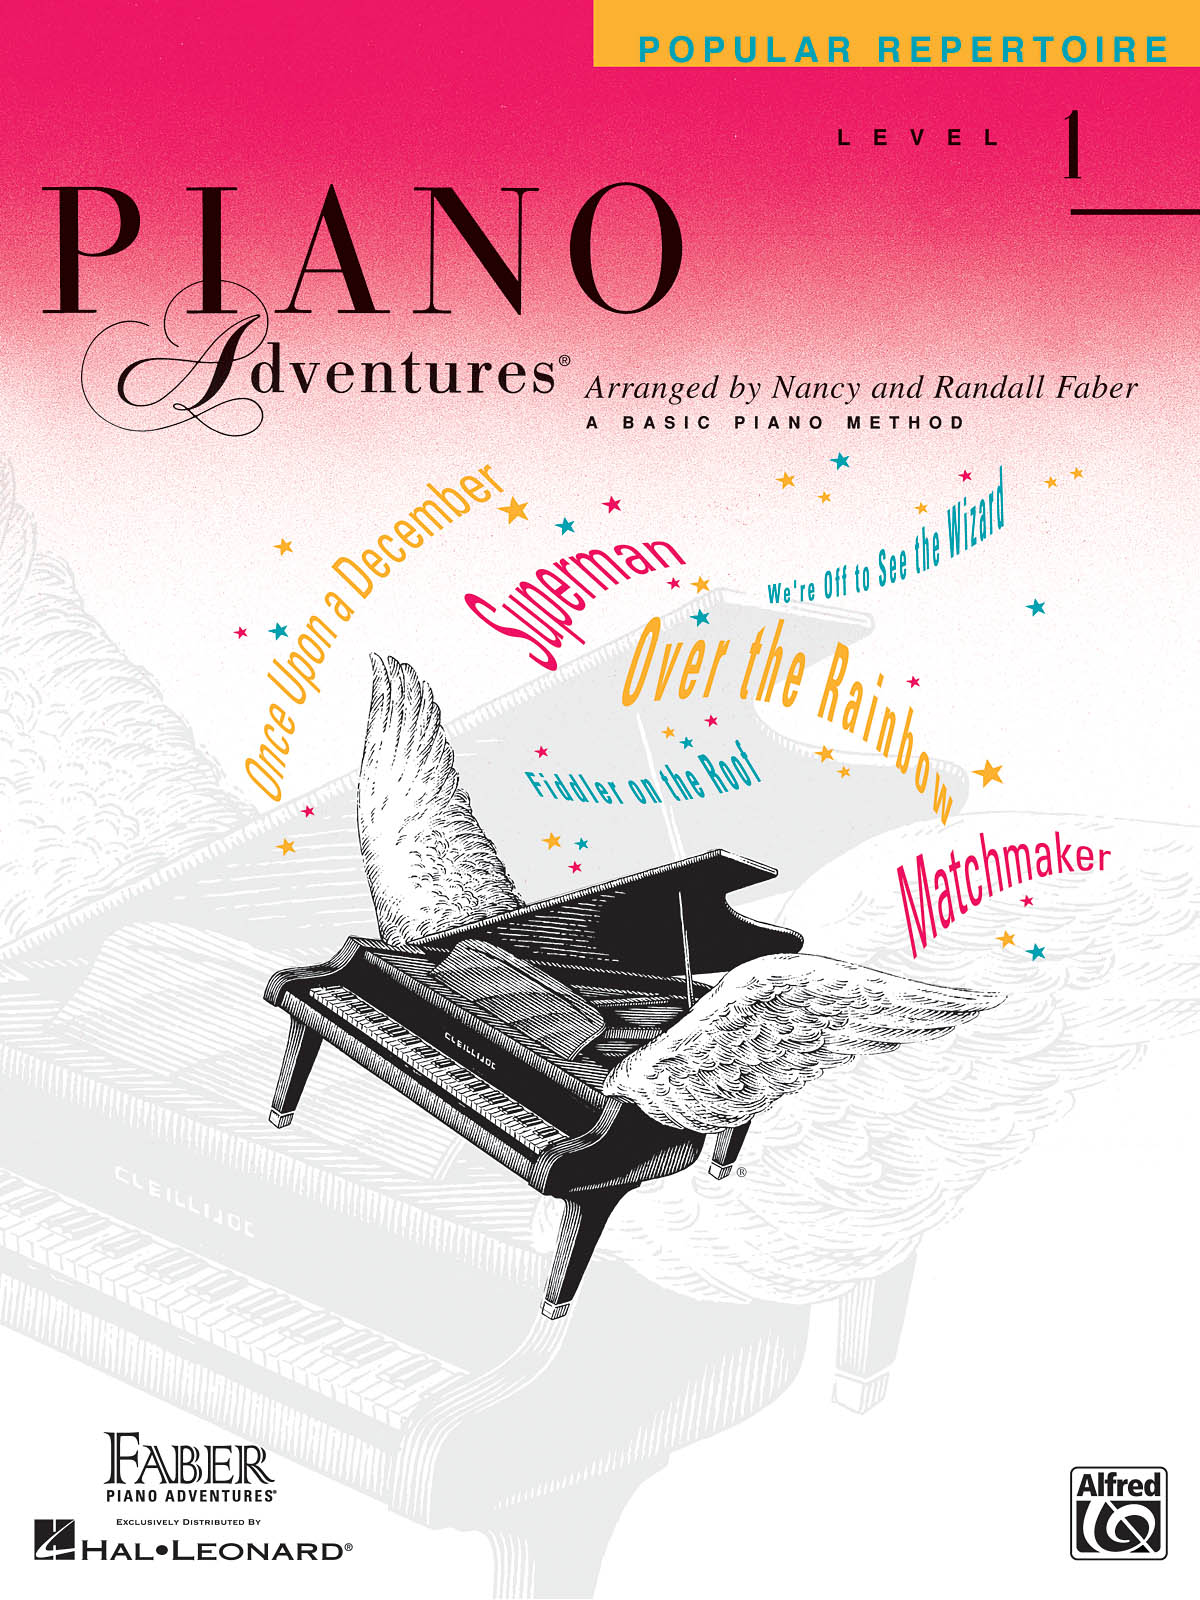 Piano Adventures Level 1 - Popular Repertoire Book učebnice pro klavír